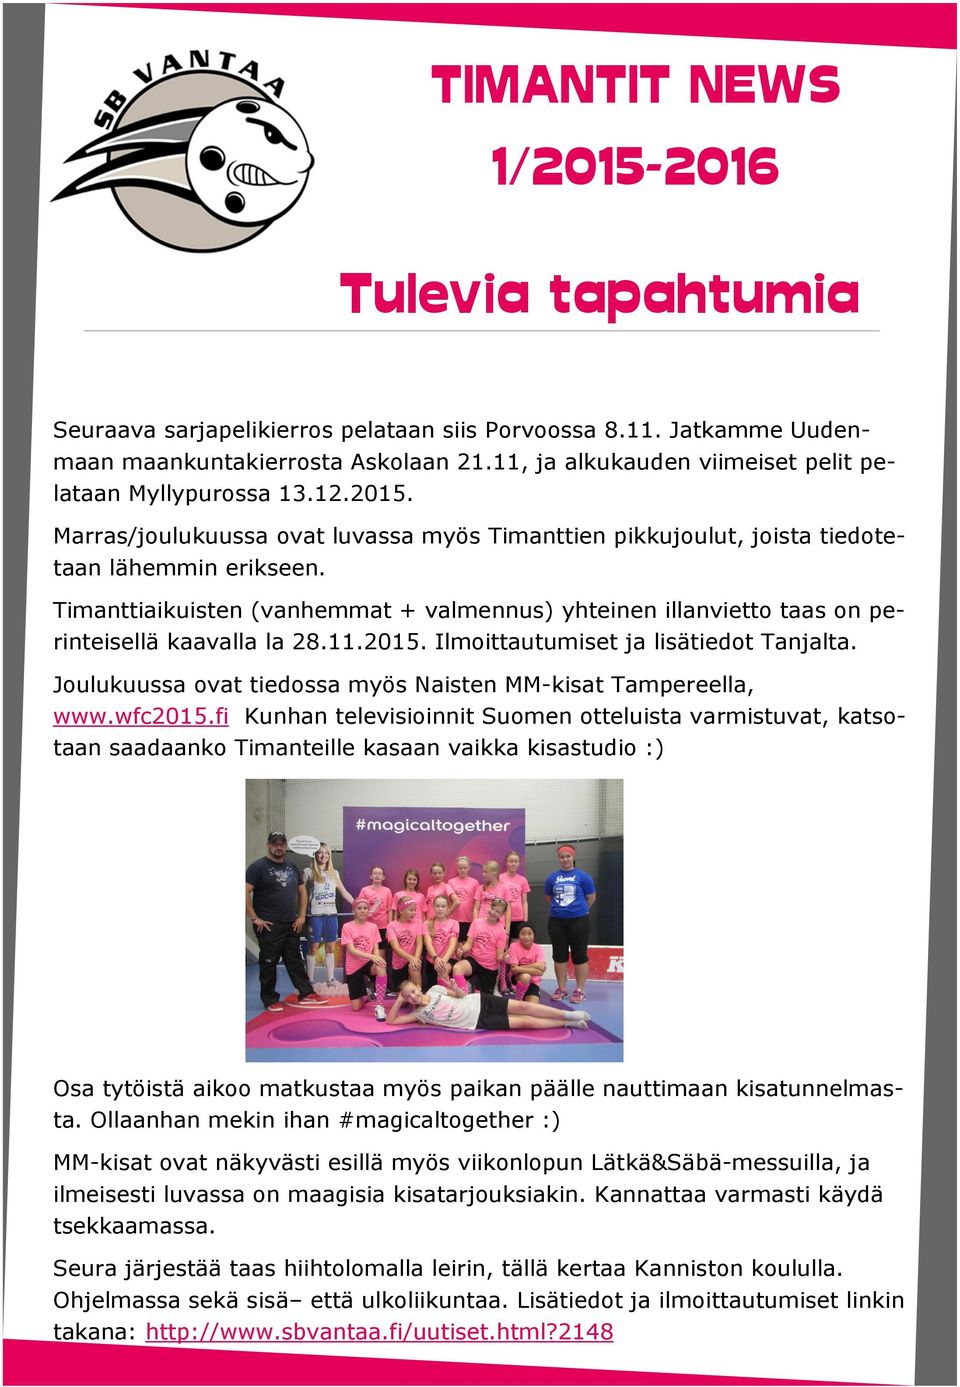 11.2015. Ilmoittautumiset ja lisätiedot Tanjalta. Joulukuussa ovat tiedossa myös Naisten MM-kisat Tampereella, www.wfc2015.